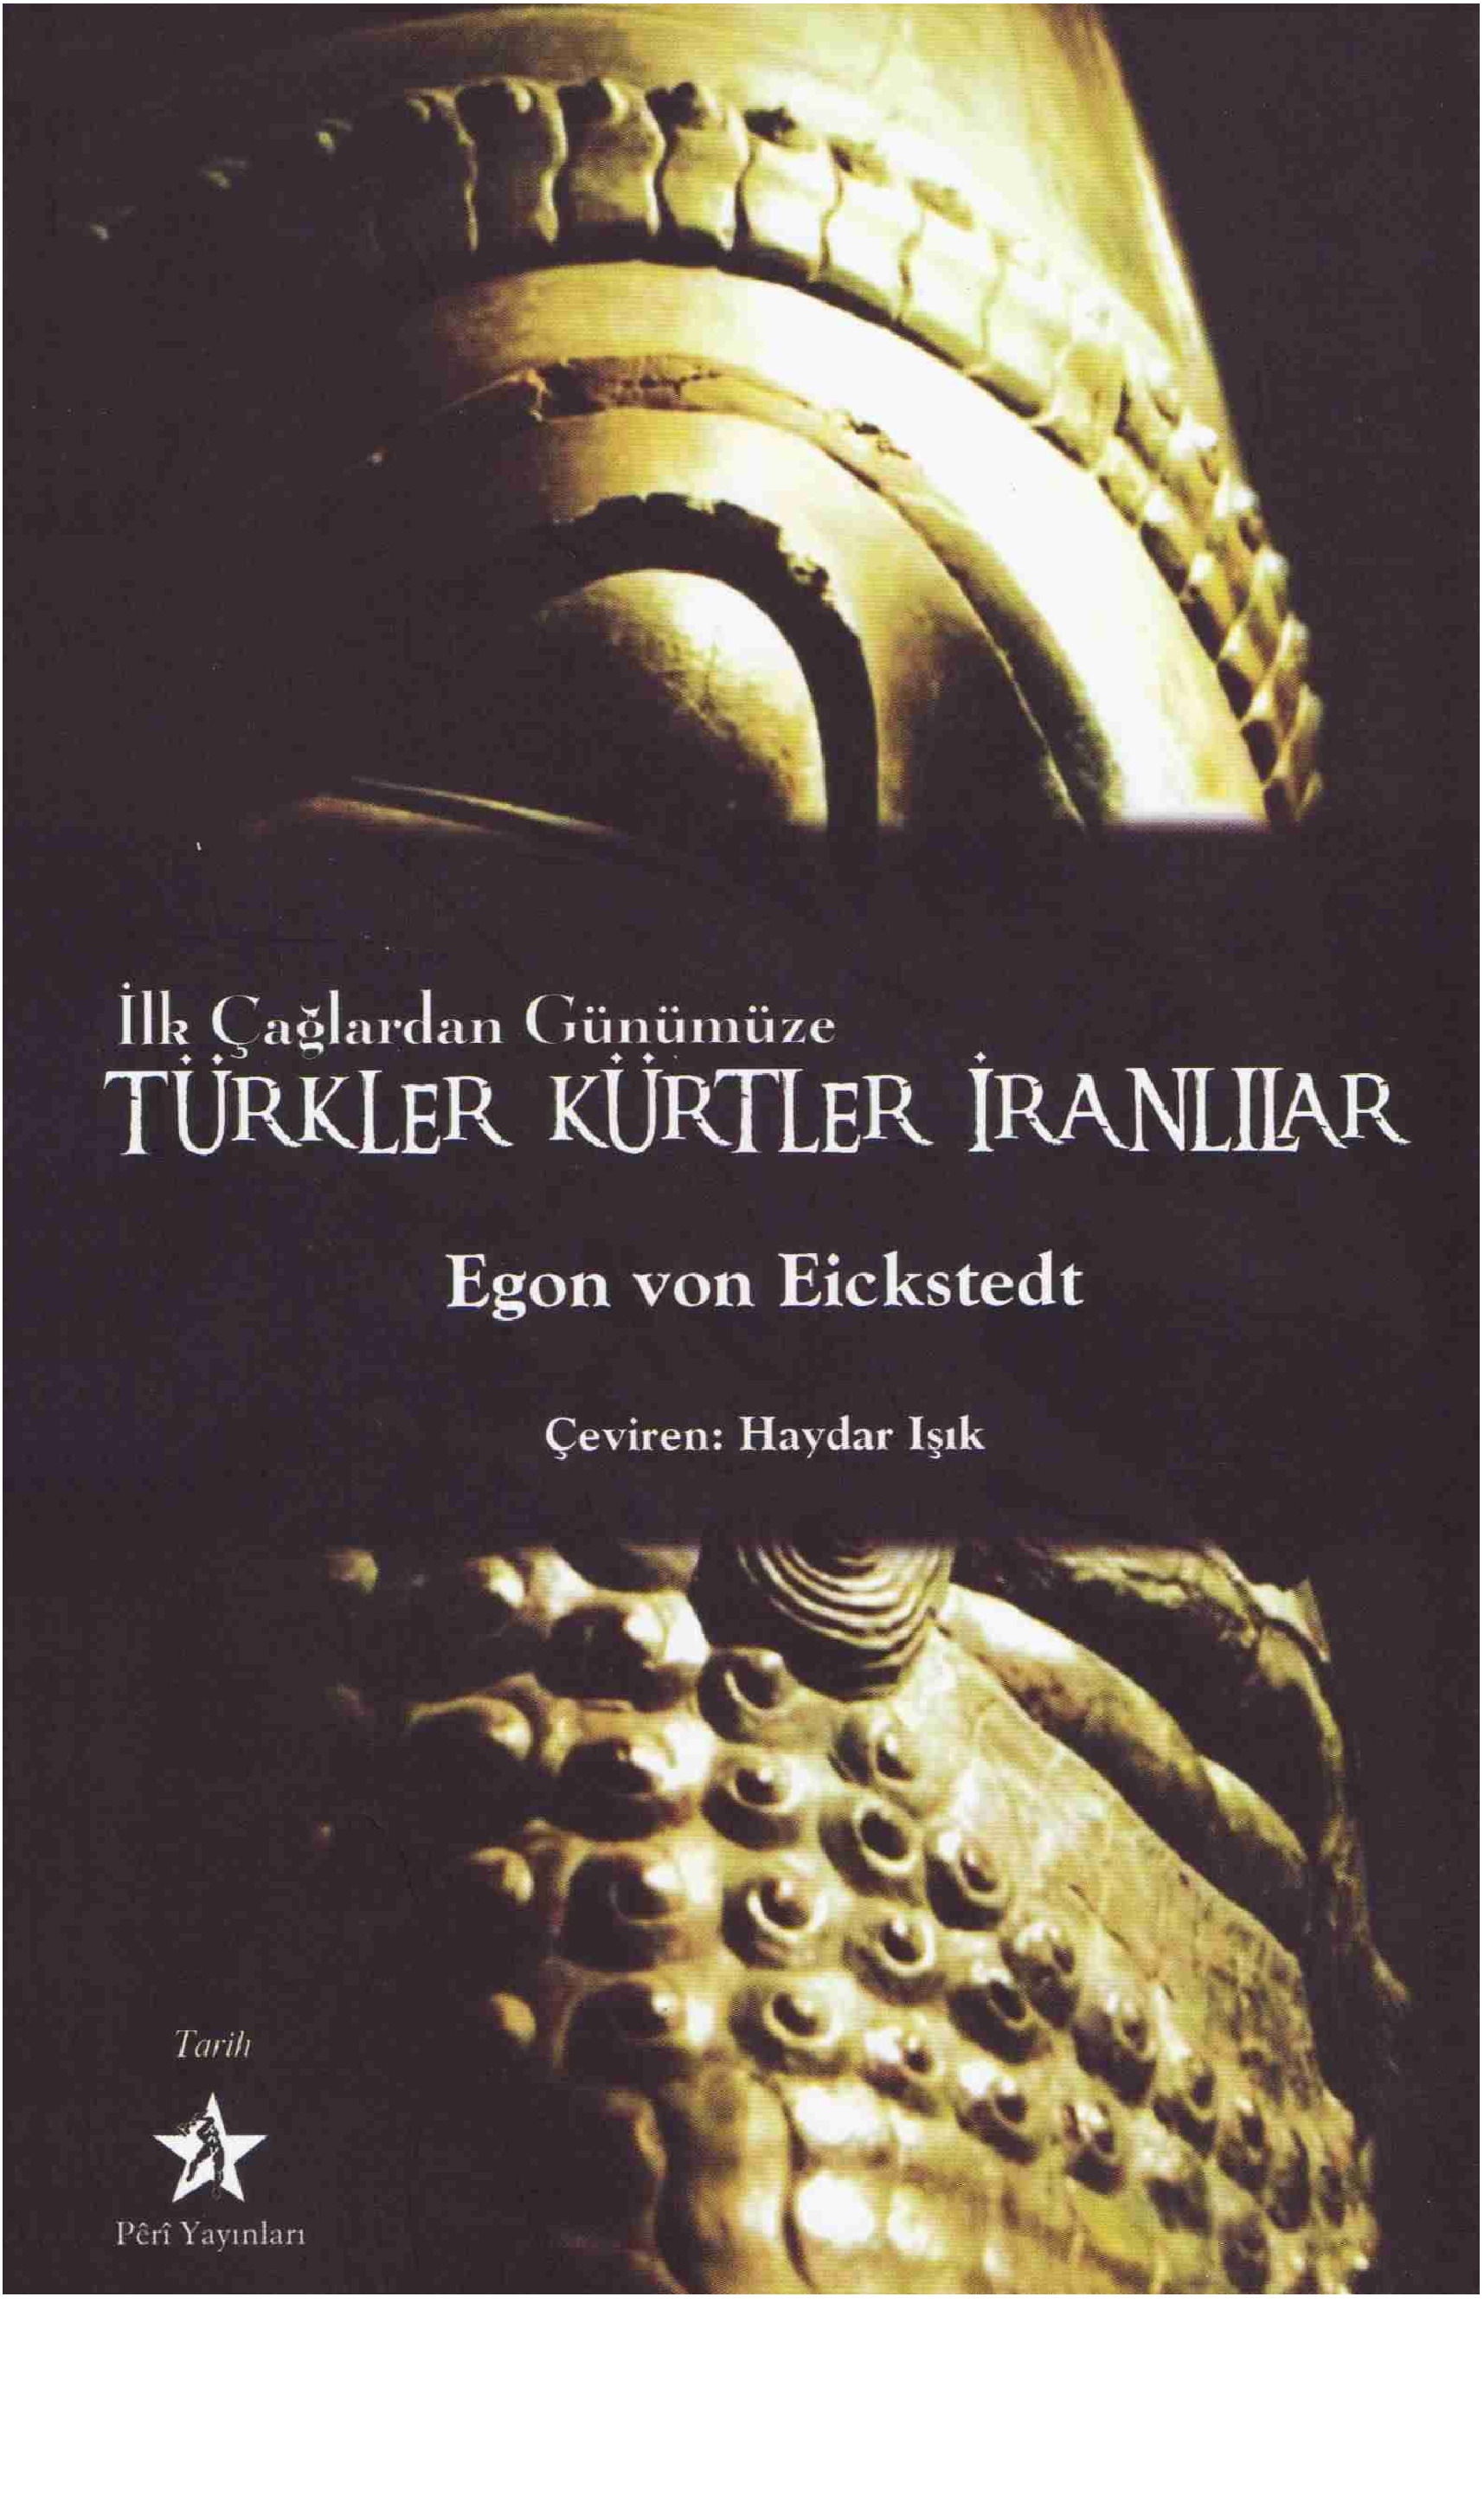 İlk Çağlardan Günümüze Turkler, Kürdler, İranlılar Egon Von Eickstedt-Heyder Işıq 2010  232s